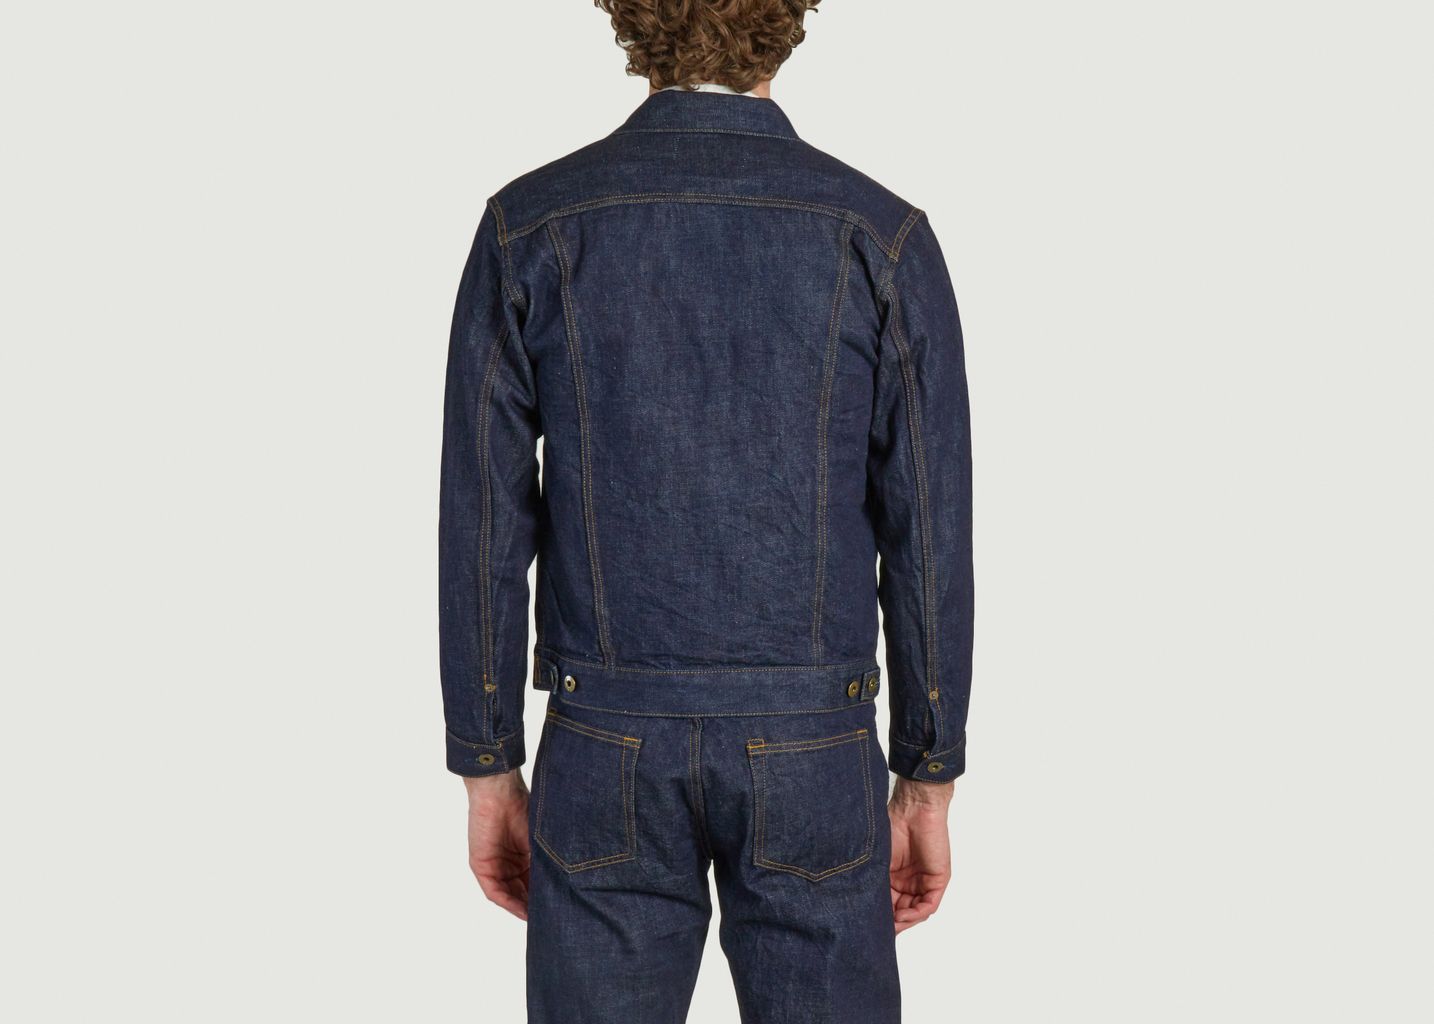 Jean jacket 12.5oz type 4 - Japan Blue Jeans